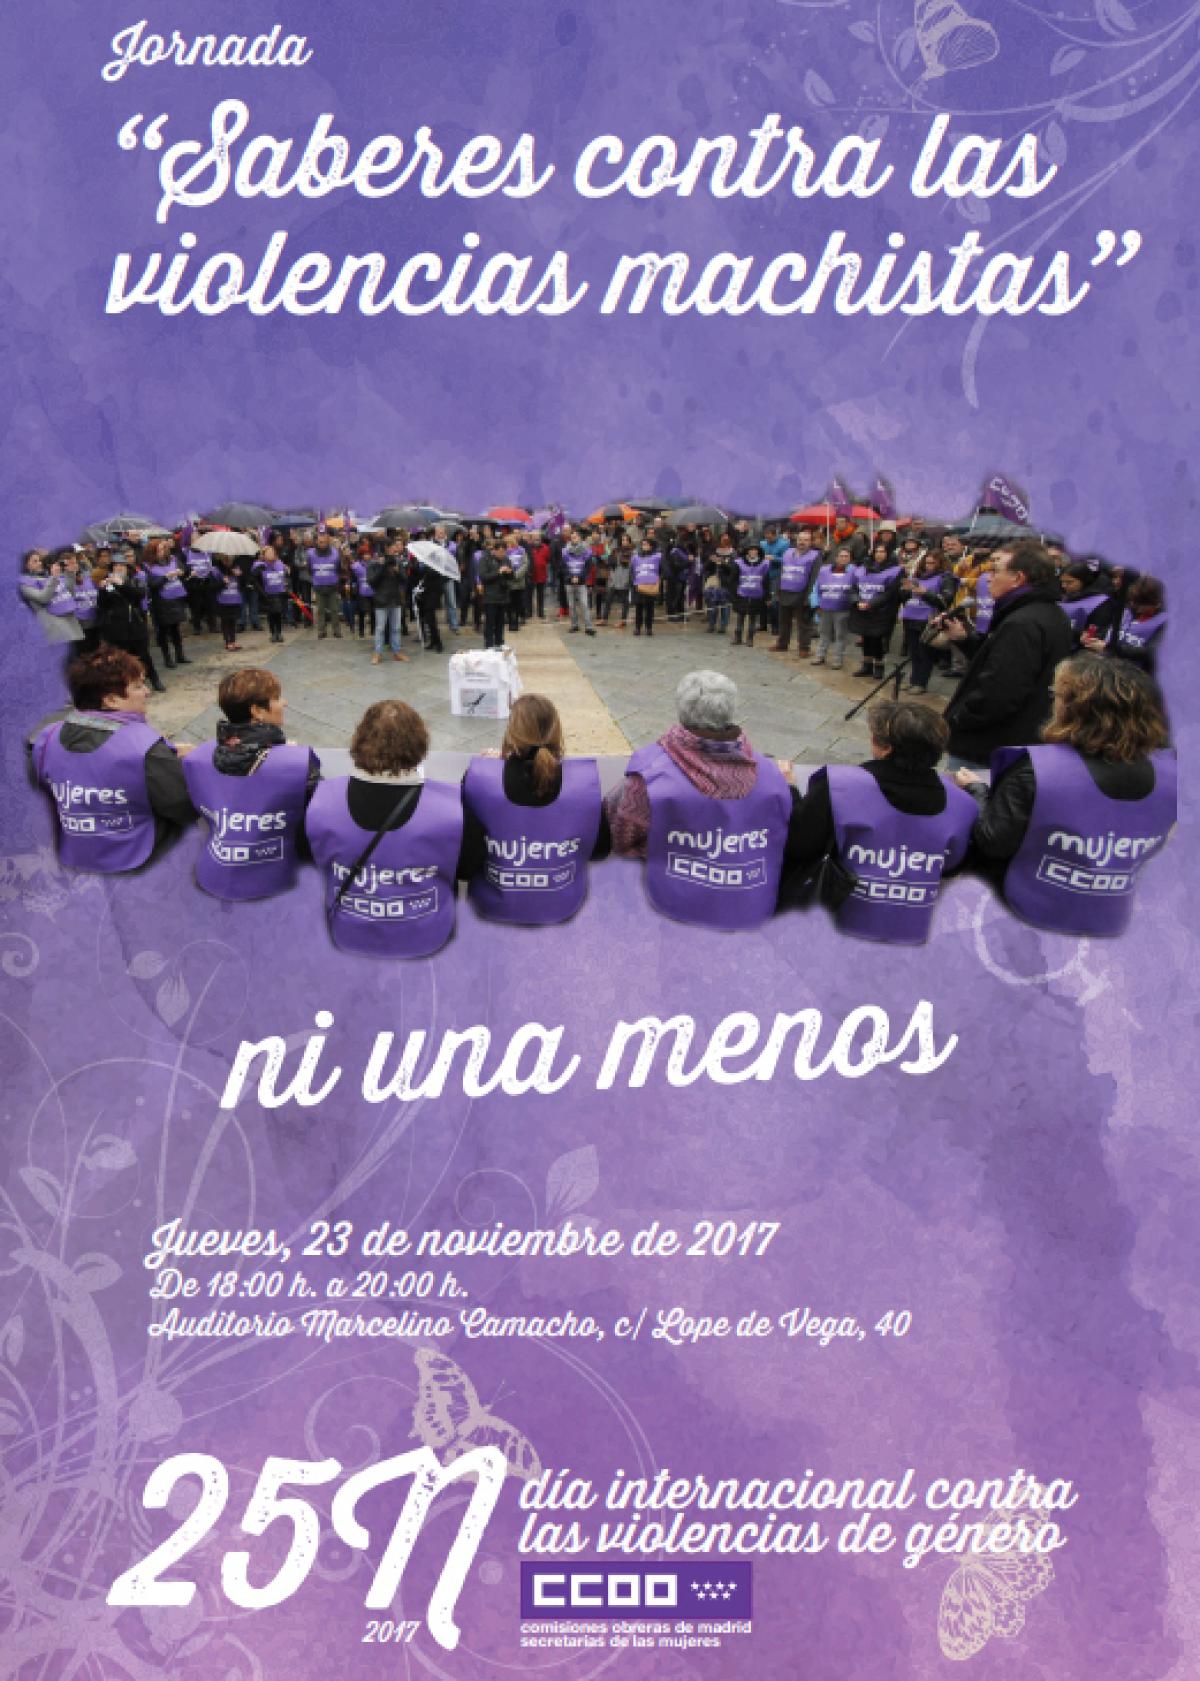 Jornada "Saberes contra las violencias machistas"